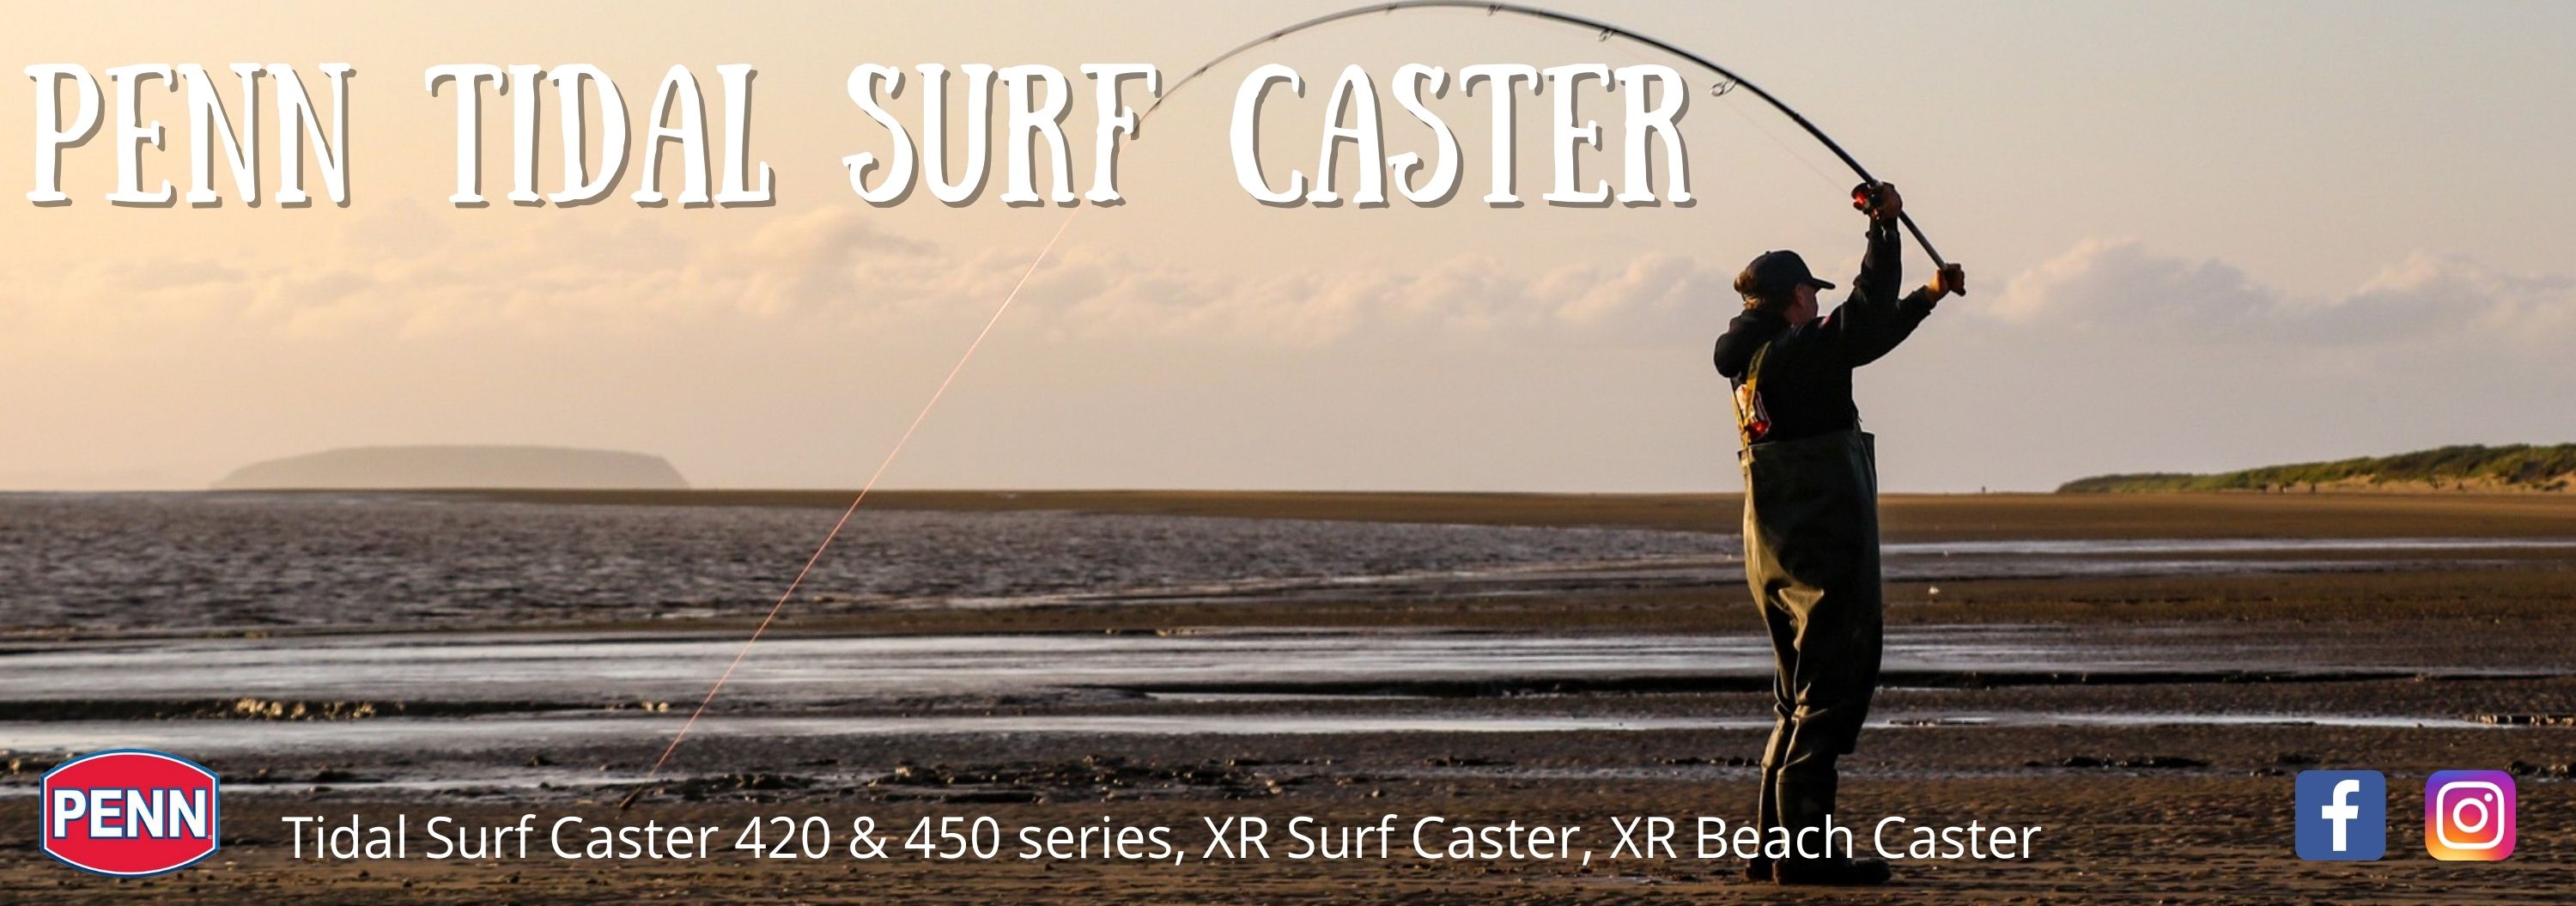 Penn Tidal Surf Caster, XR Surf Caster and XR Beach Caster